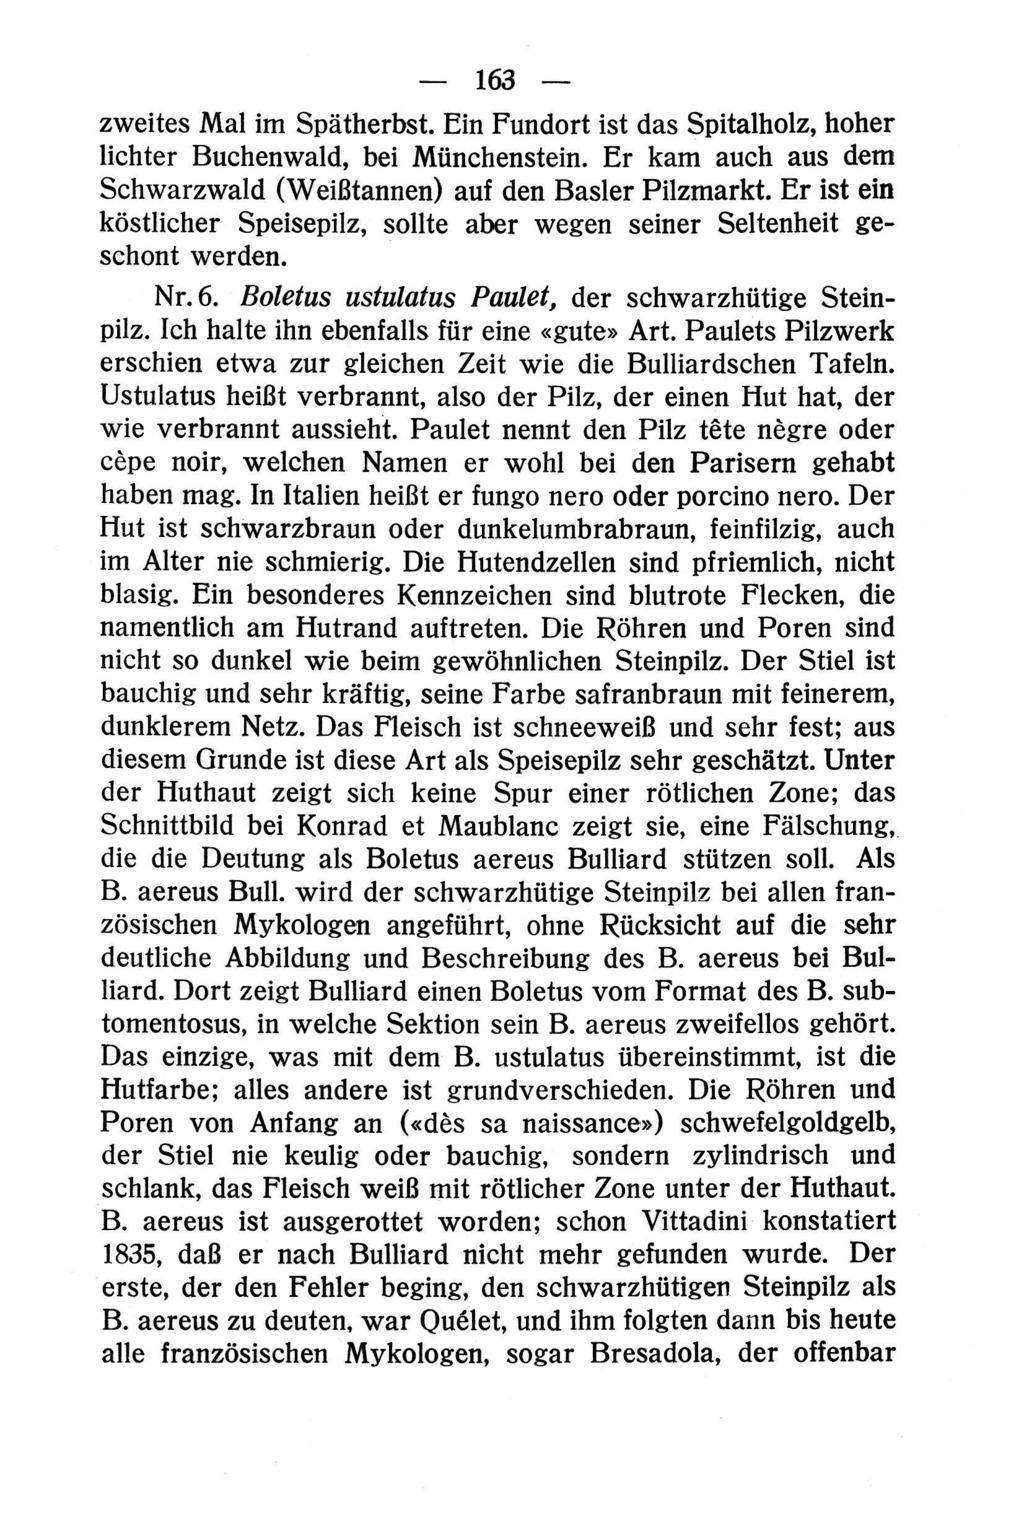 163 zweites Mal im Spätherbst. Ein Fundort ist das Spitalholz, hoher lichter Buchenwald, bei Münchenstein. Er kam auch aus dem Schwarzwald (Weißtannen) auf den Basler Pilzmarkt.